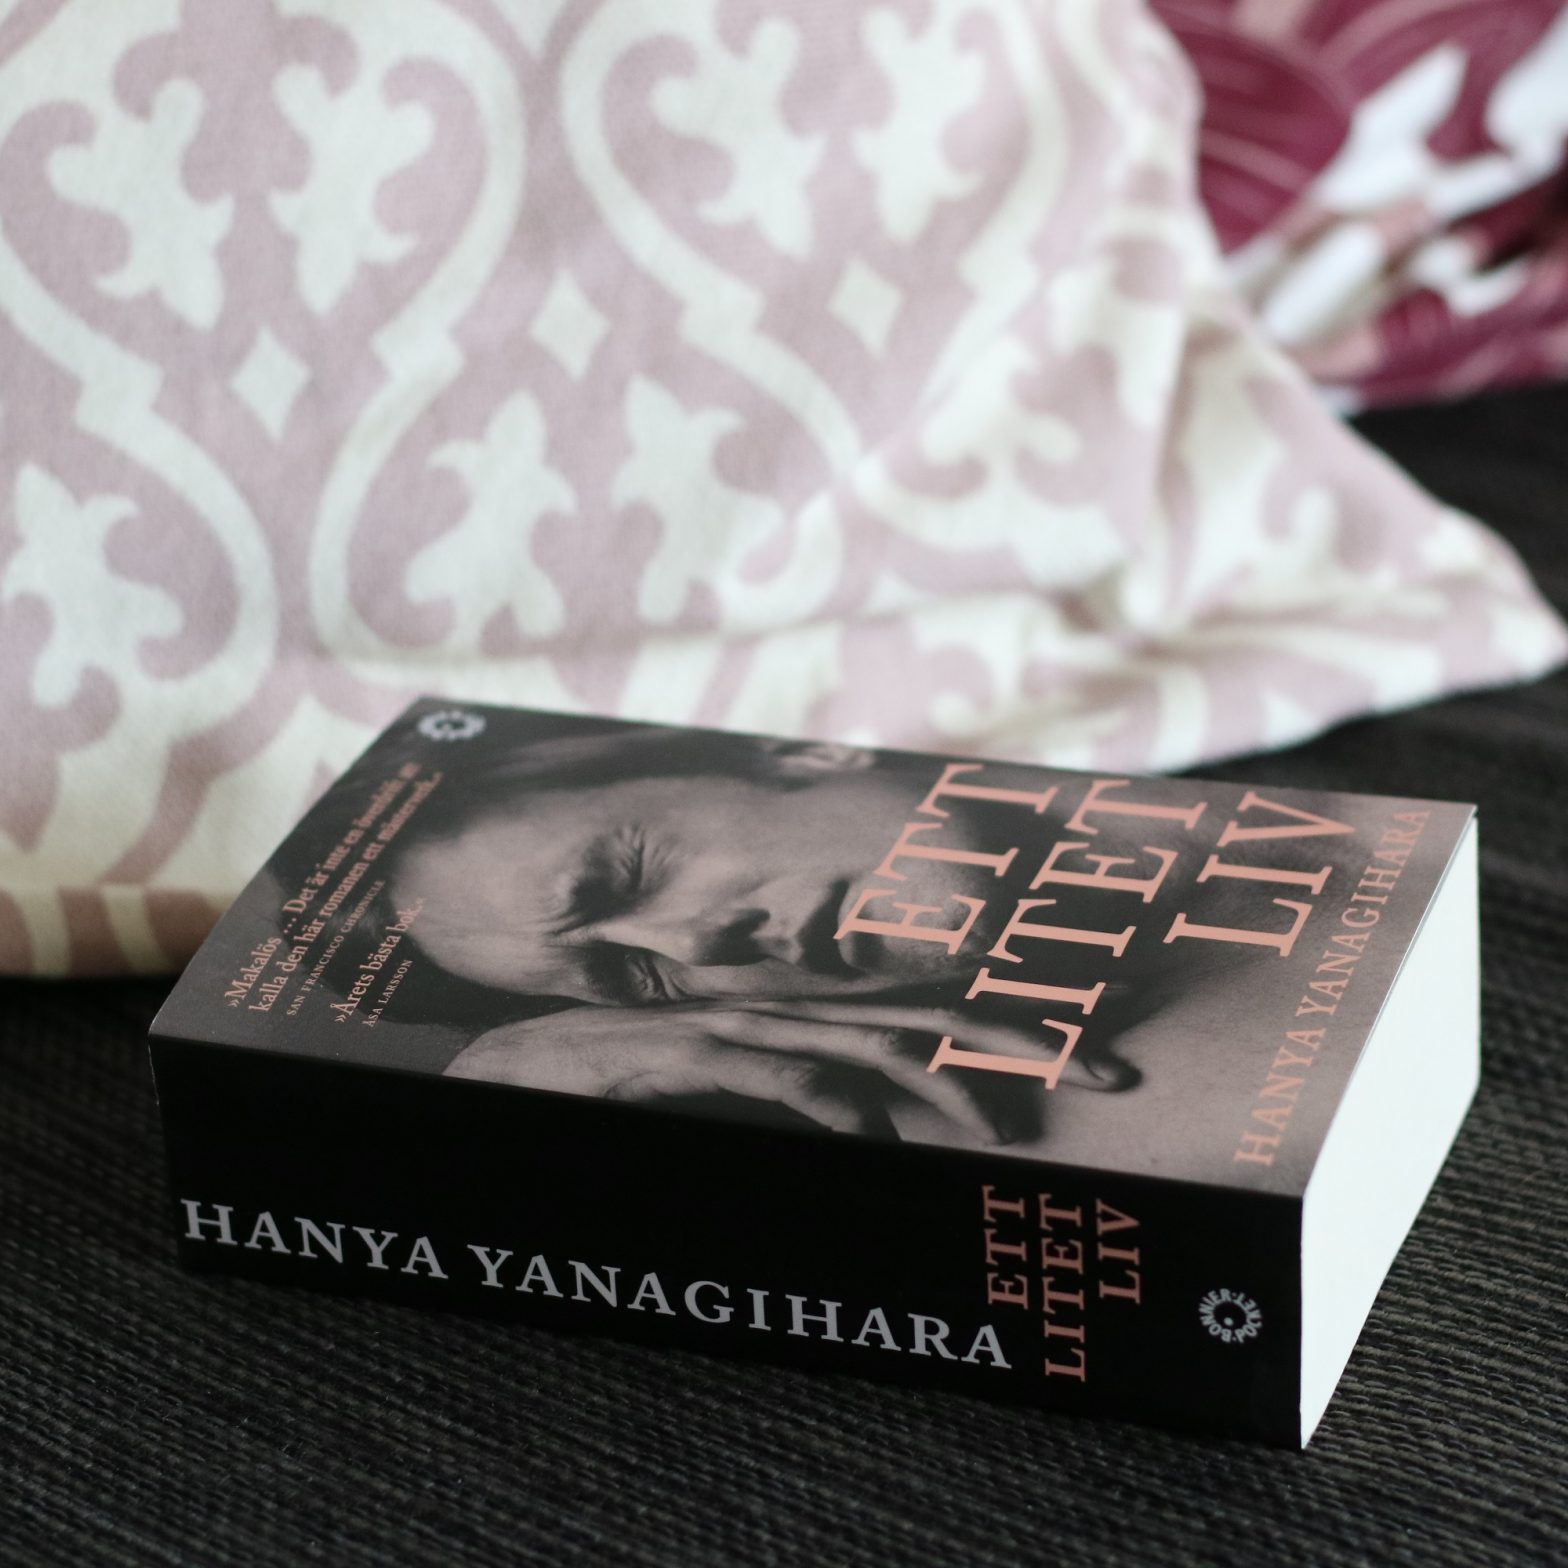 Ett litet liv av Hanya Yanagihara